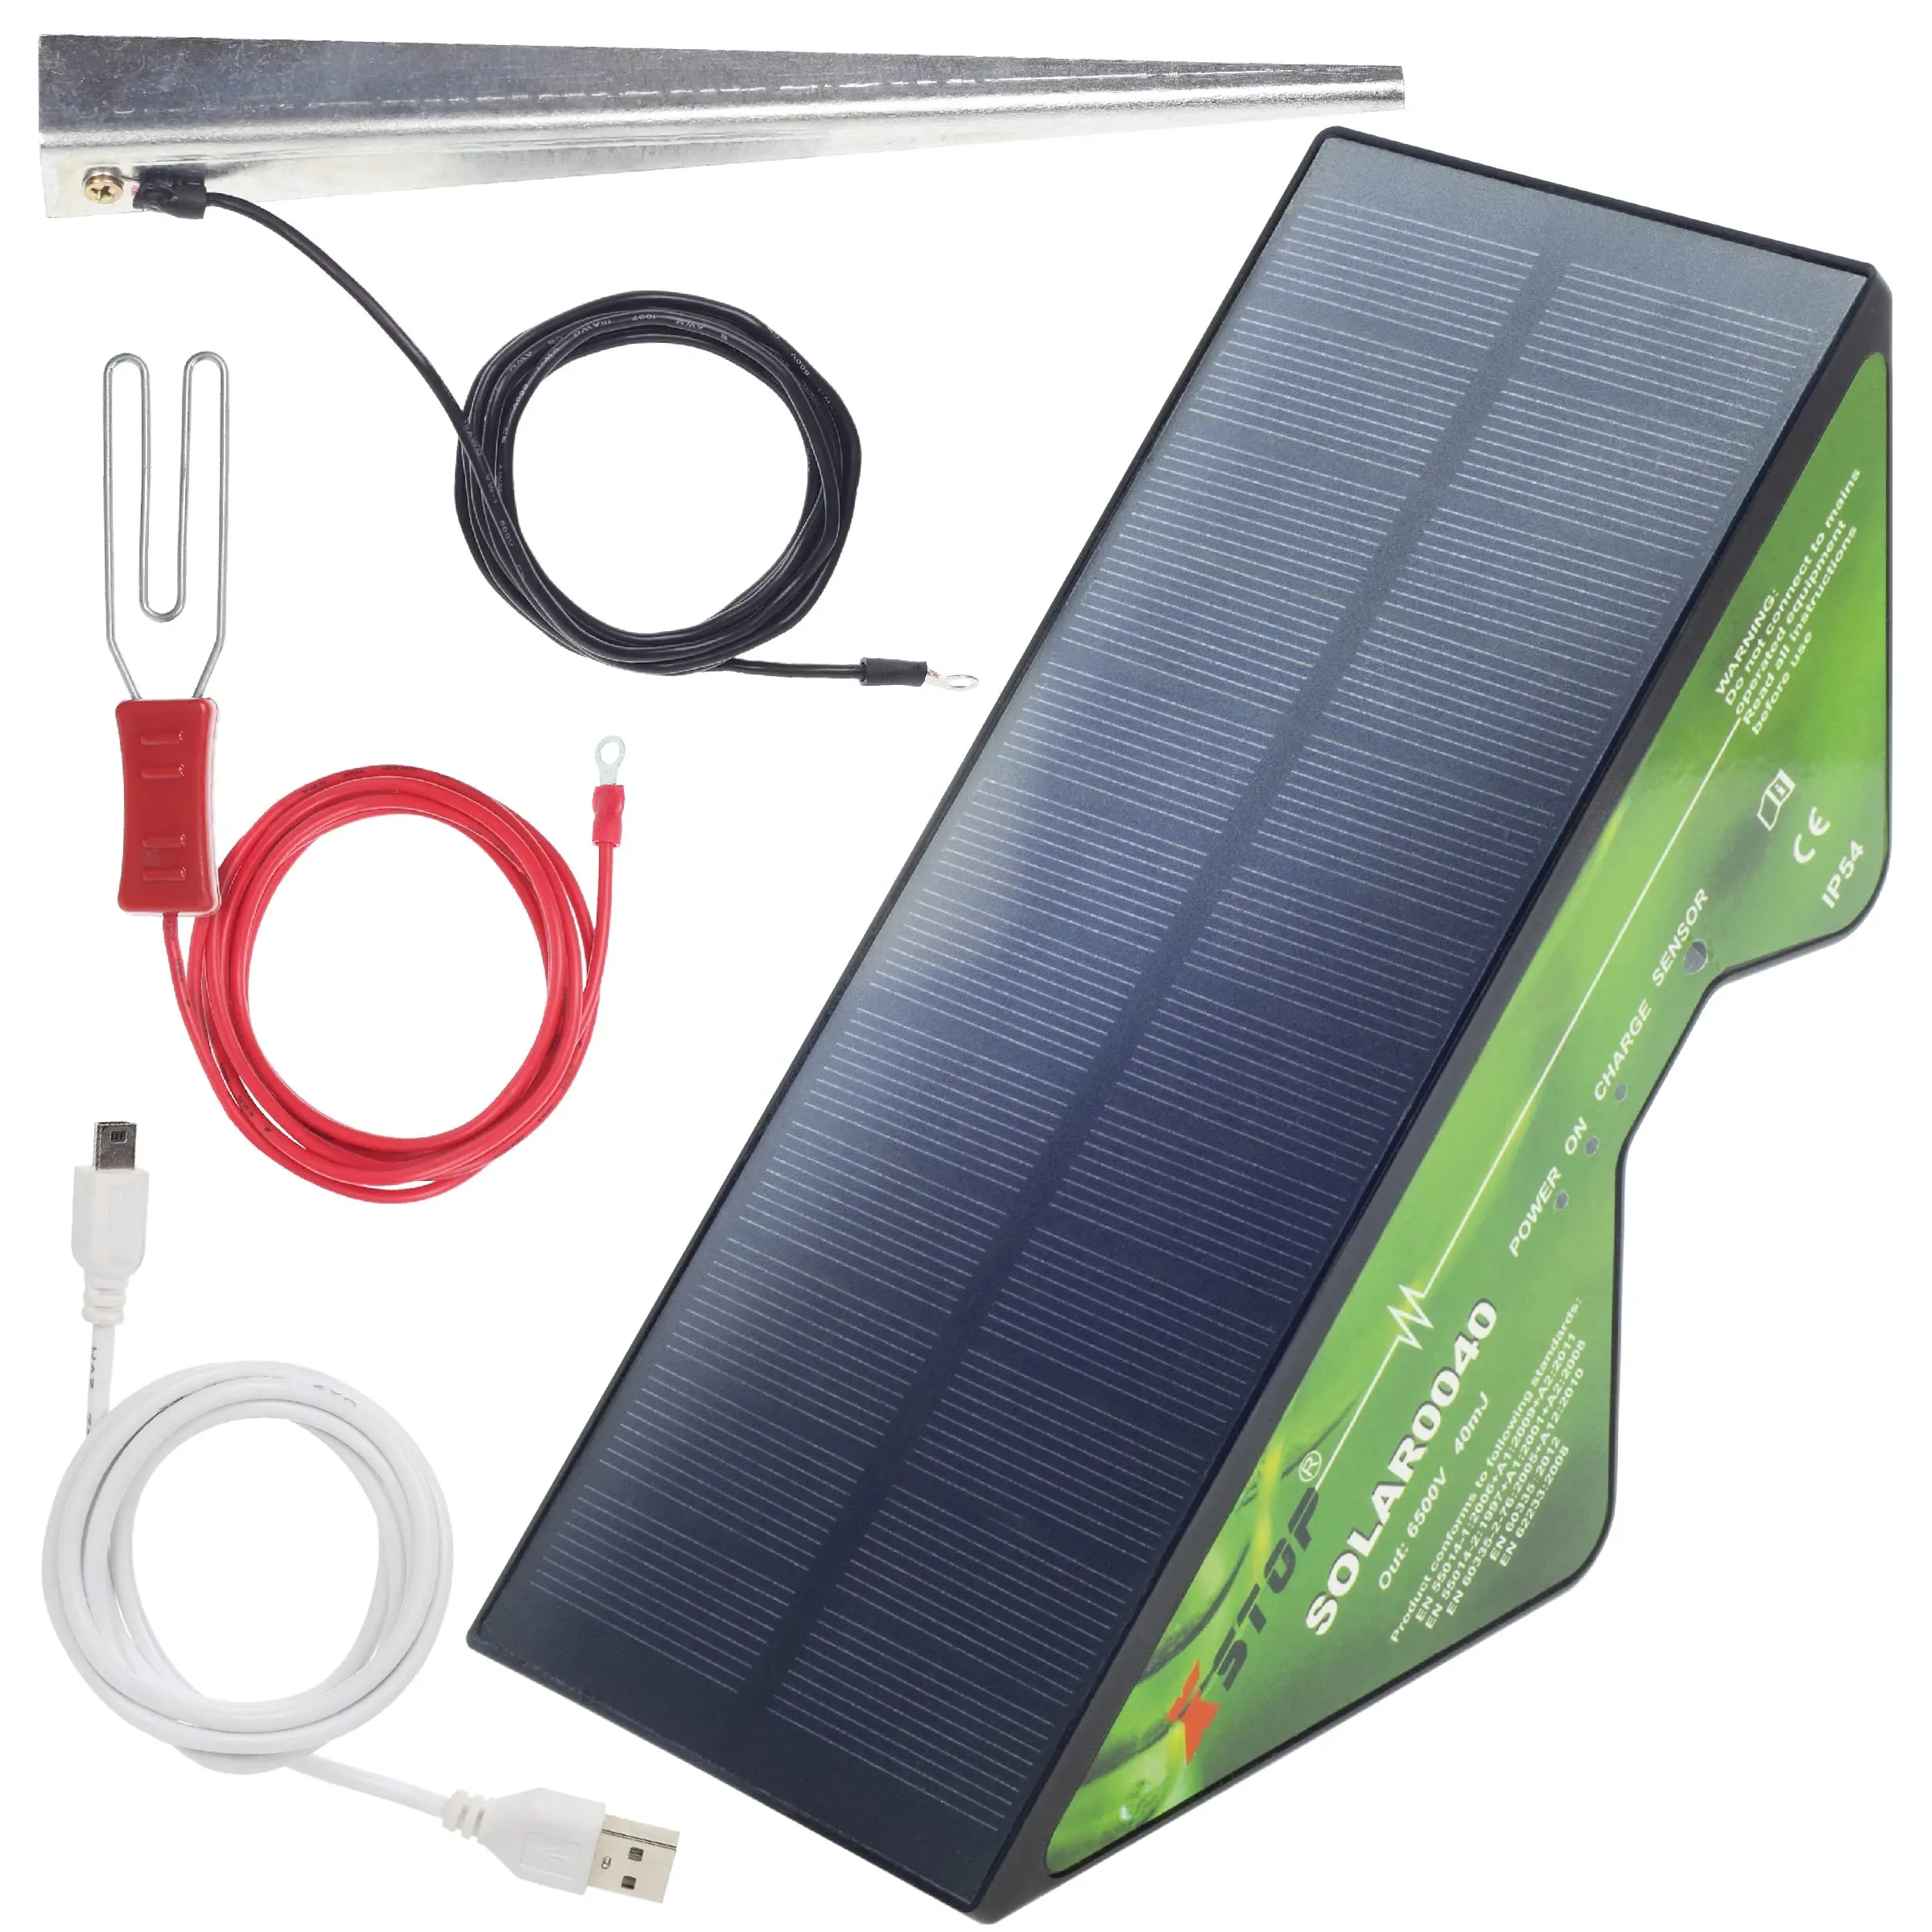 Elettrificatore per recinzione elettrica ad energia solare il Kit completo della gamma da X-Stop2 Km include paletto di terra e tutti i cavi più il cavo di ricarica USB